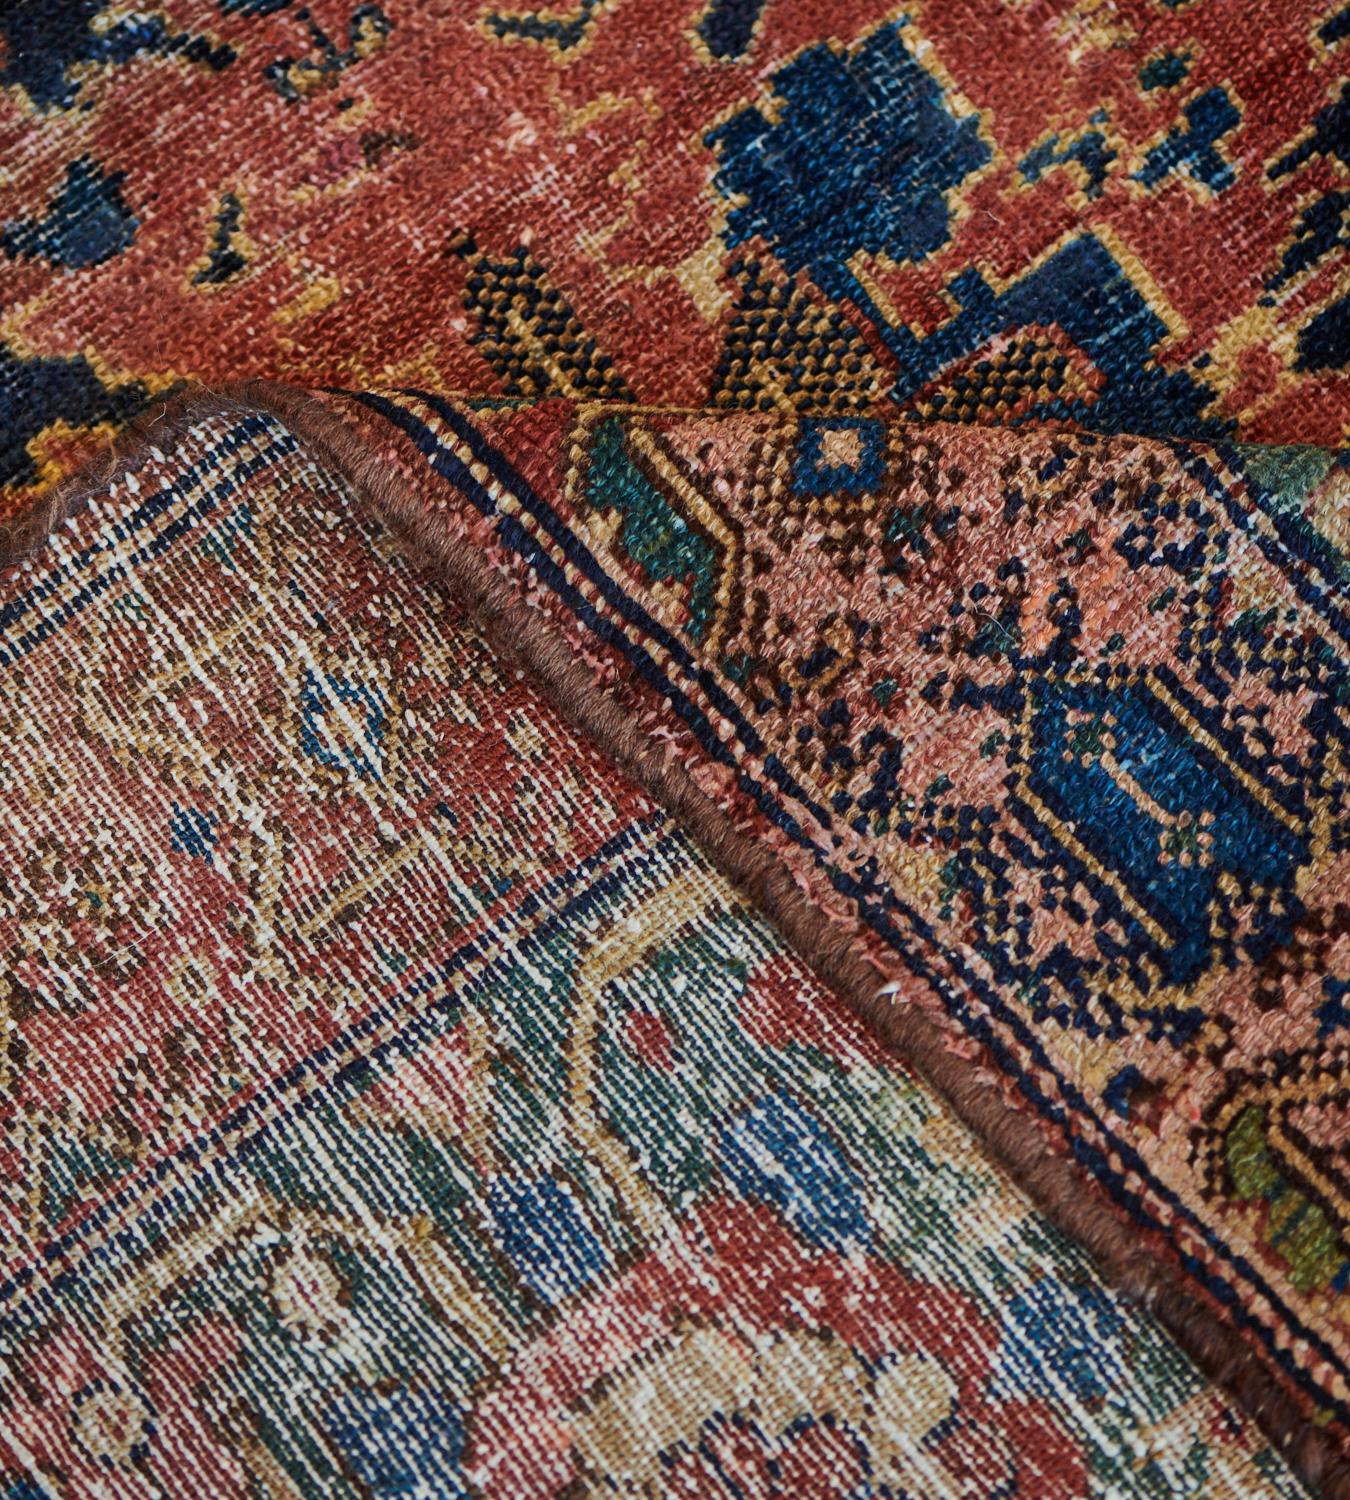 Cet ancien tapis Malayer, datant d'environ 1900, présente un champ bleu indigo avec deux larges bandes horizontales de couleur rouge terracotta nuancé, composées d'épis floraux audacieux entourés d'autres arrangements floraux et feuillus, tous